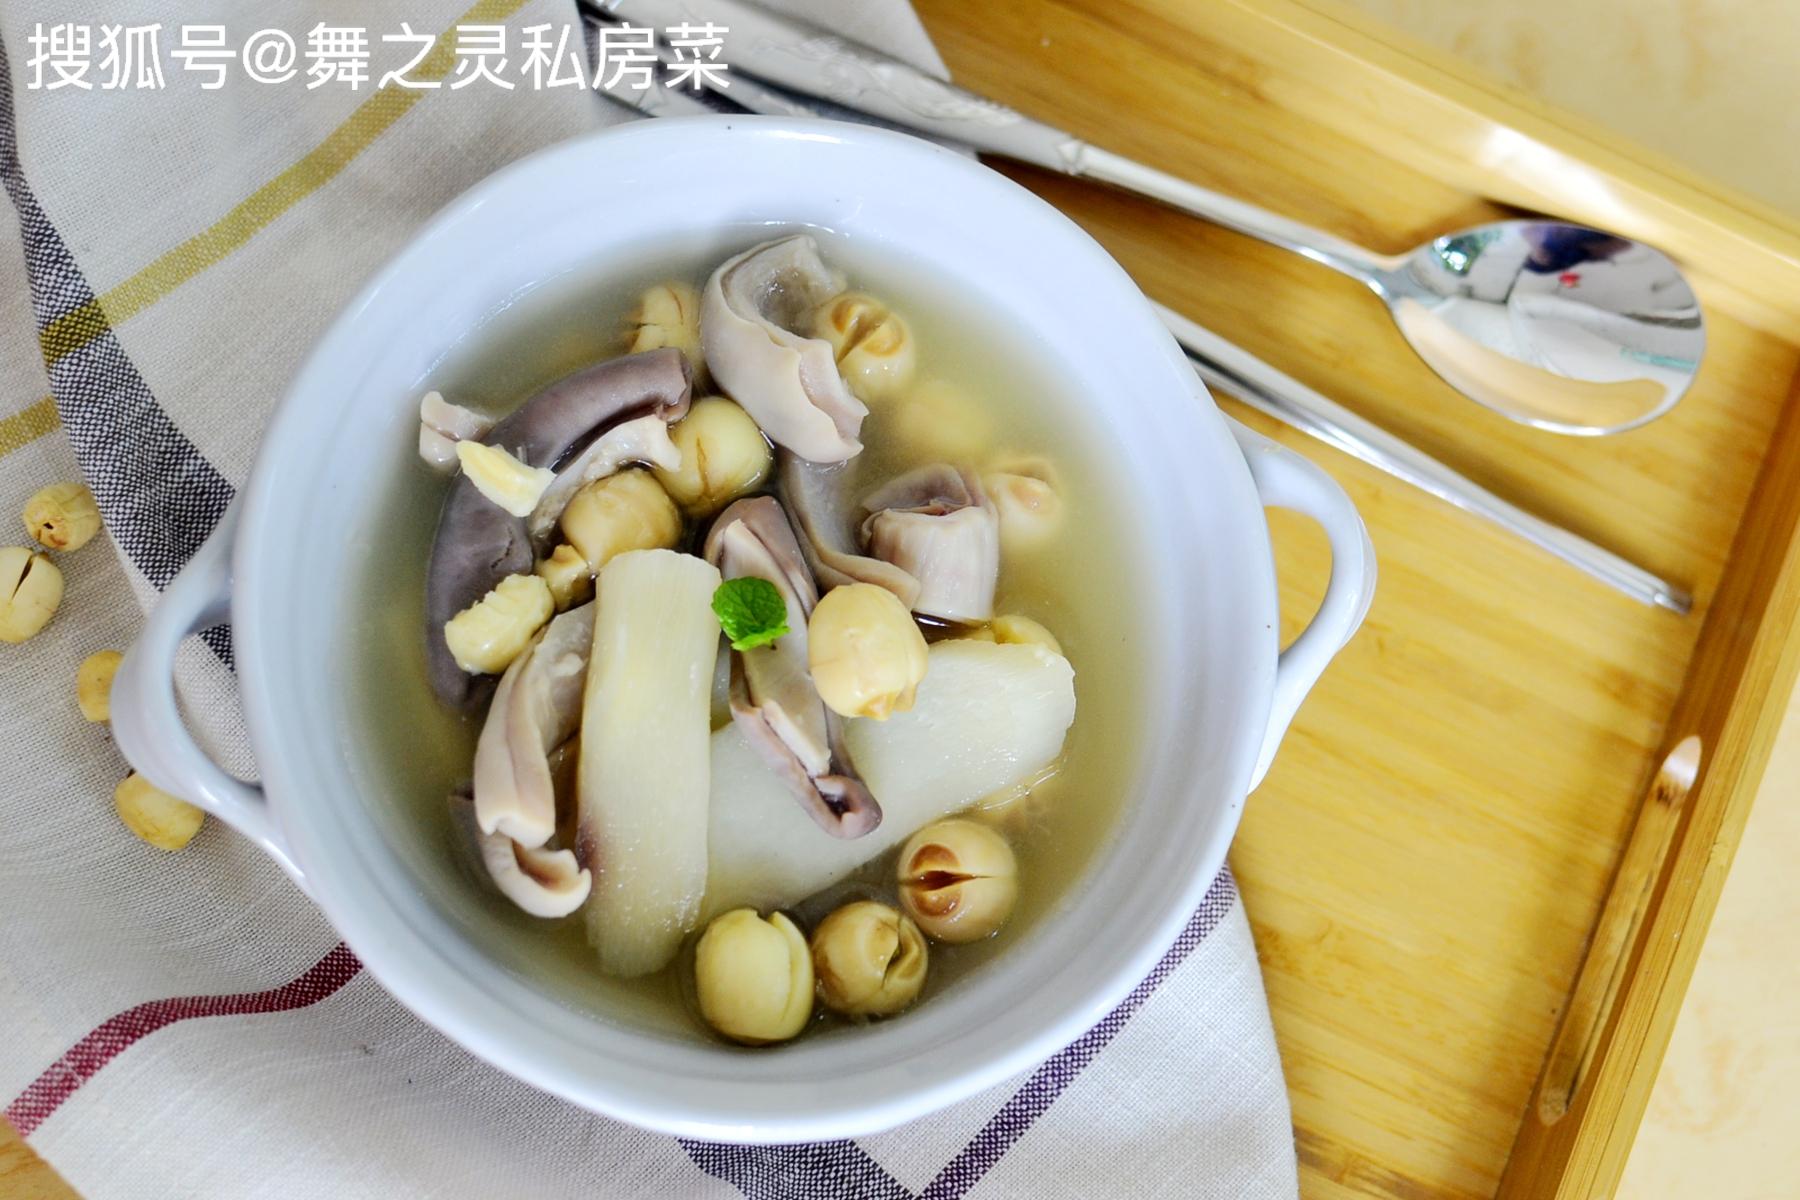 山药猪肚汤的做法介绍 猪肚汤怎么做最好吃